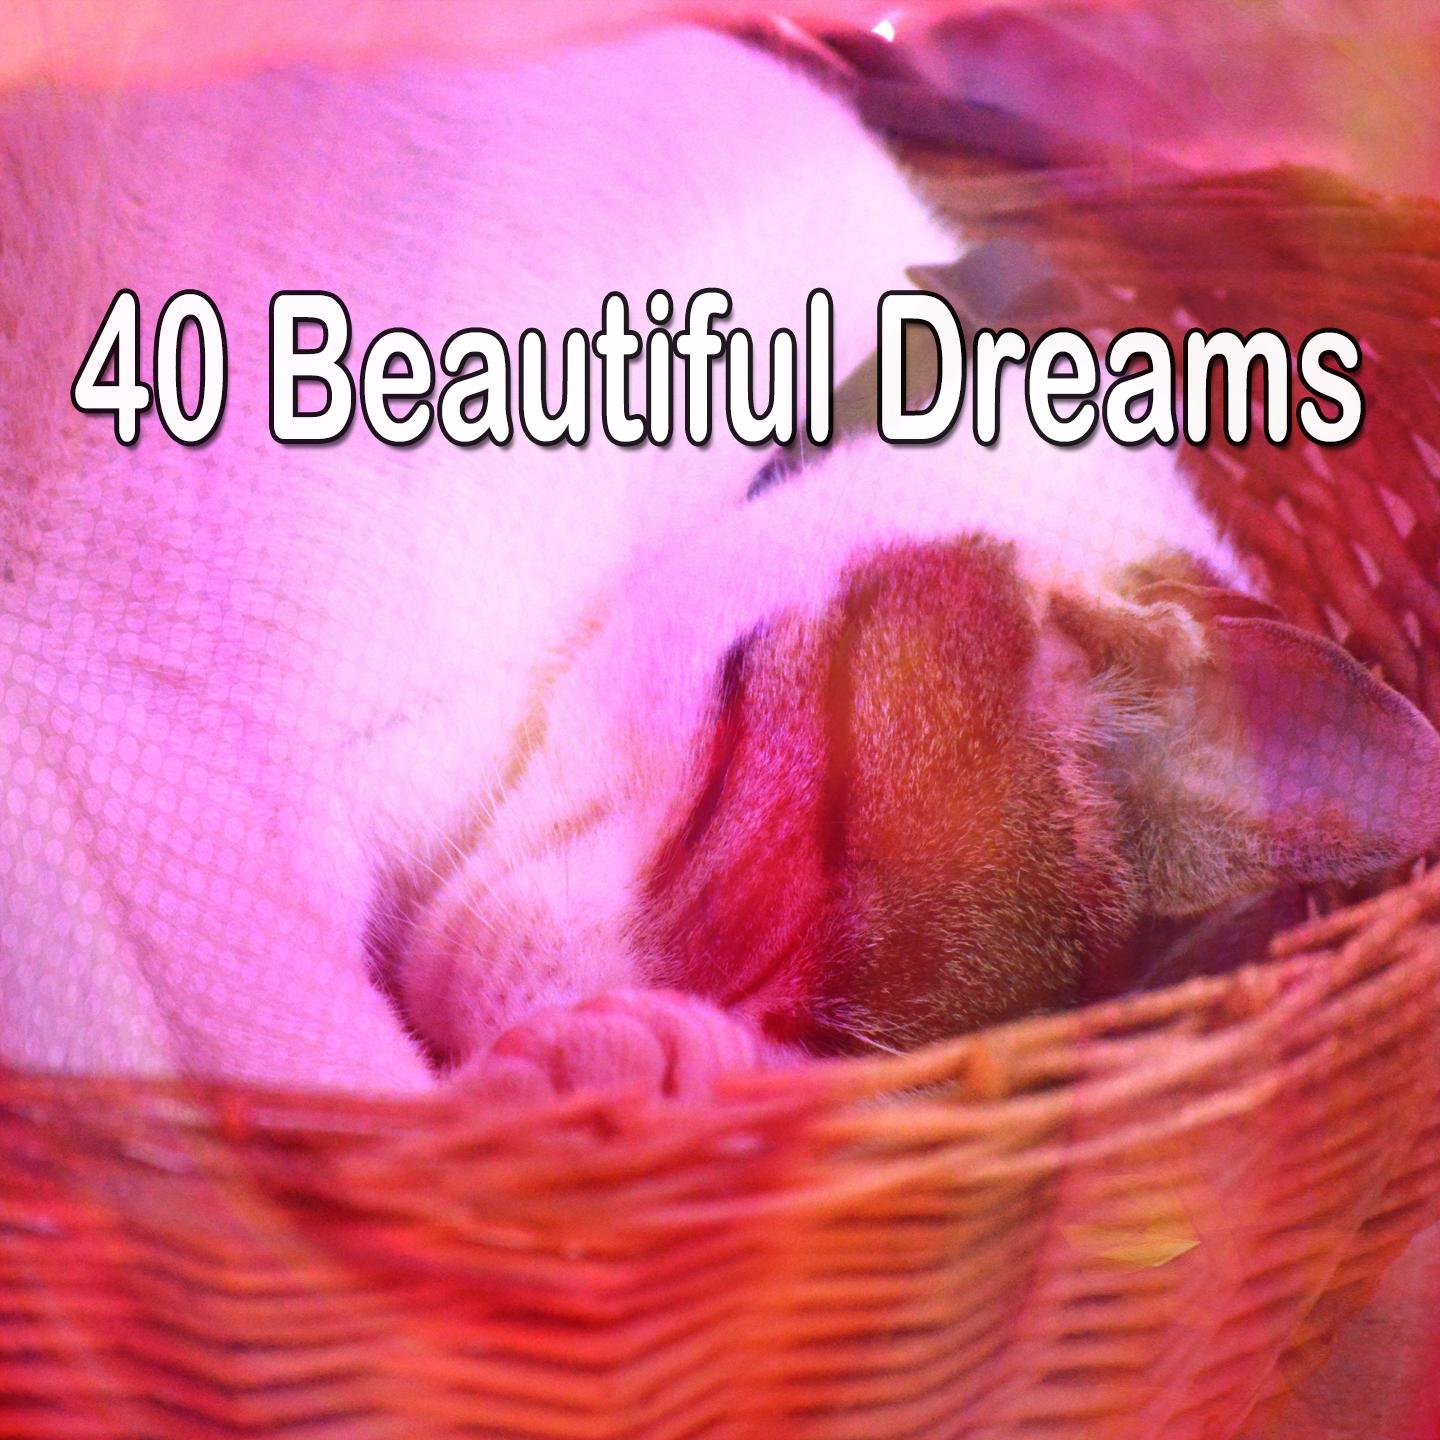 40 Beautiful Dreams